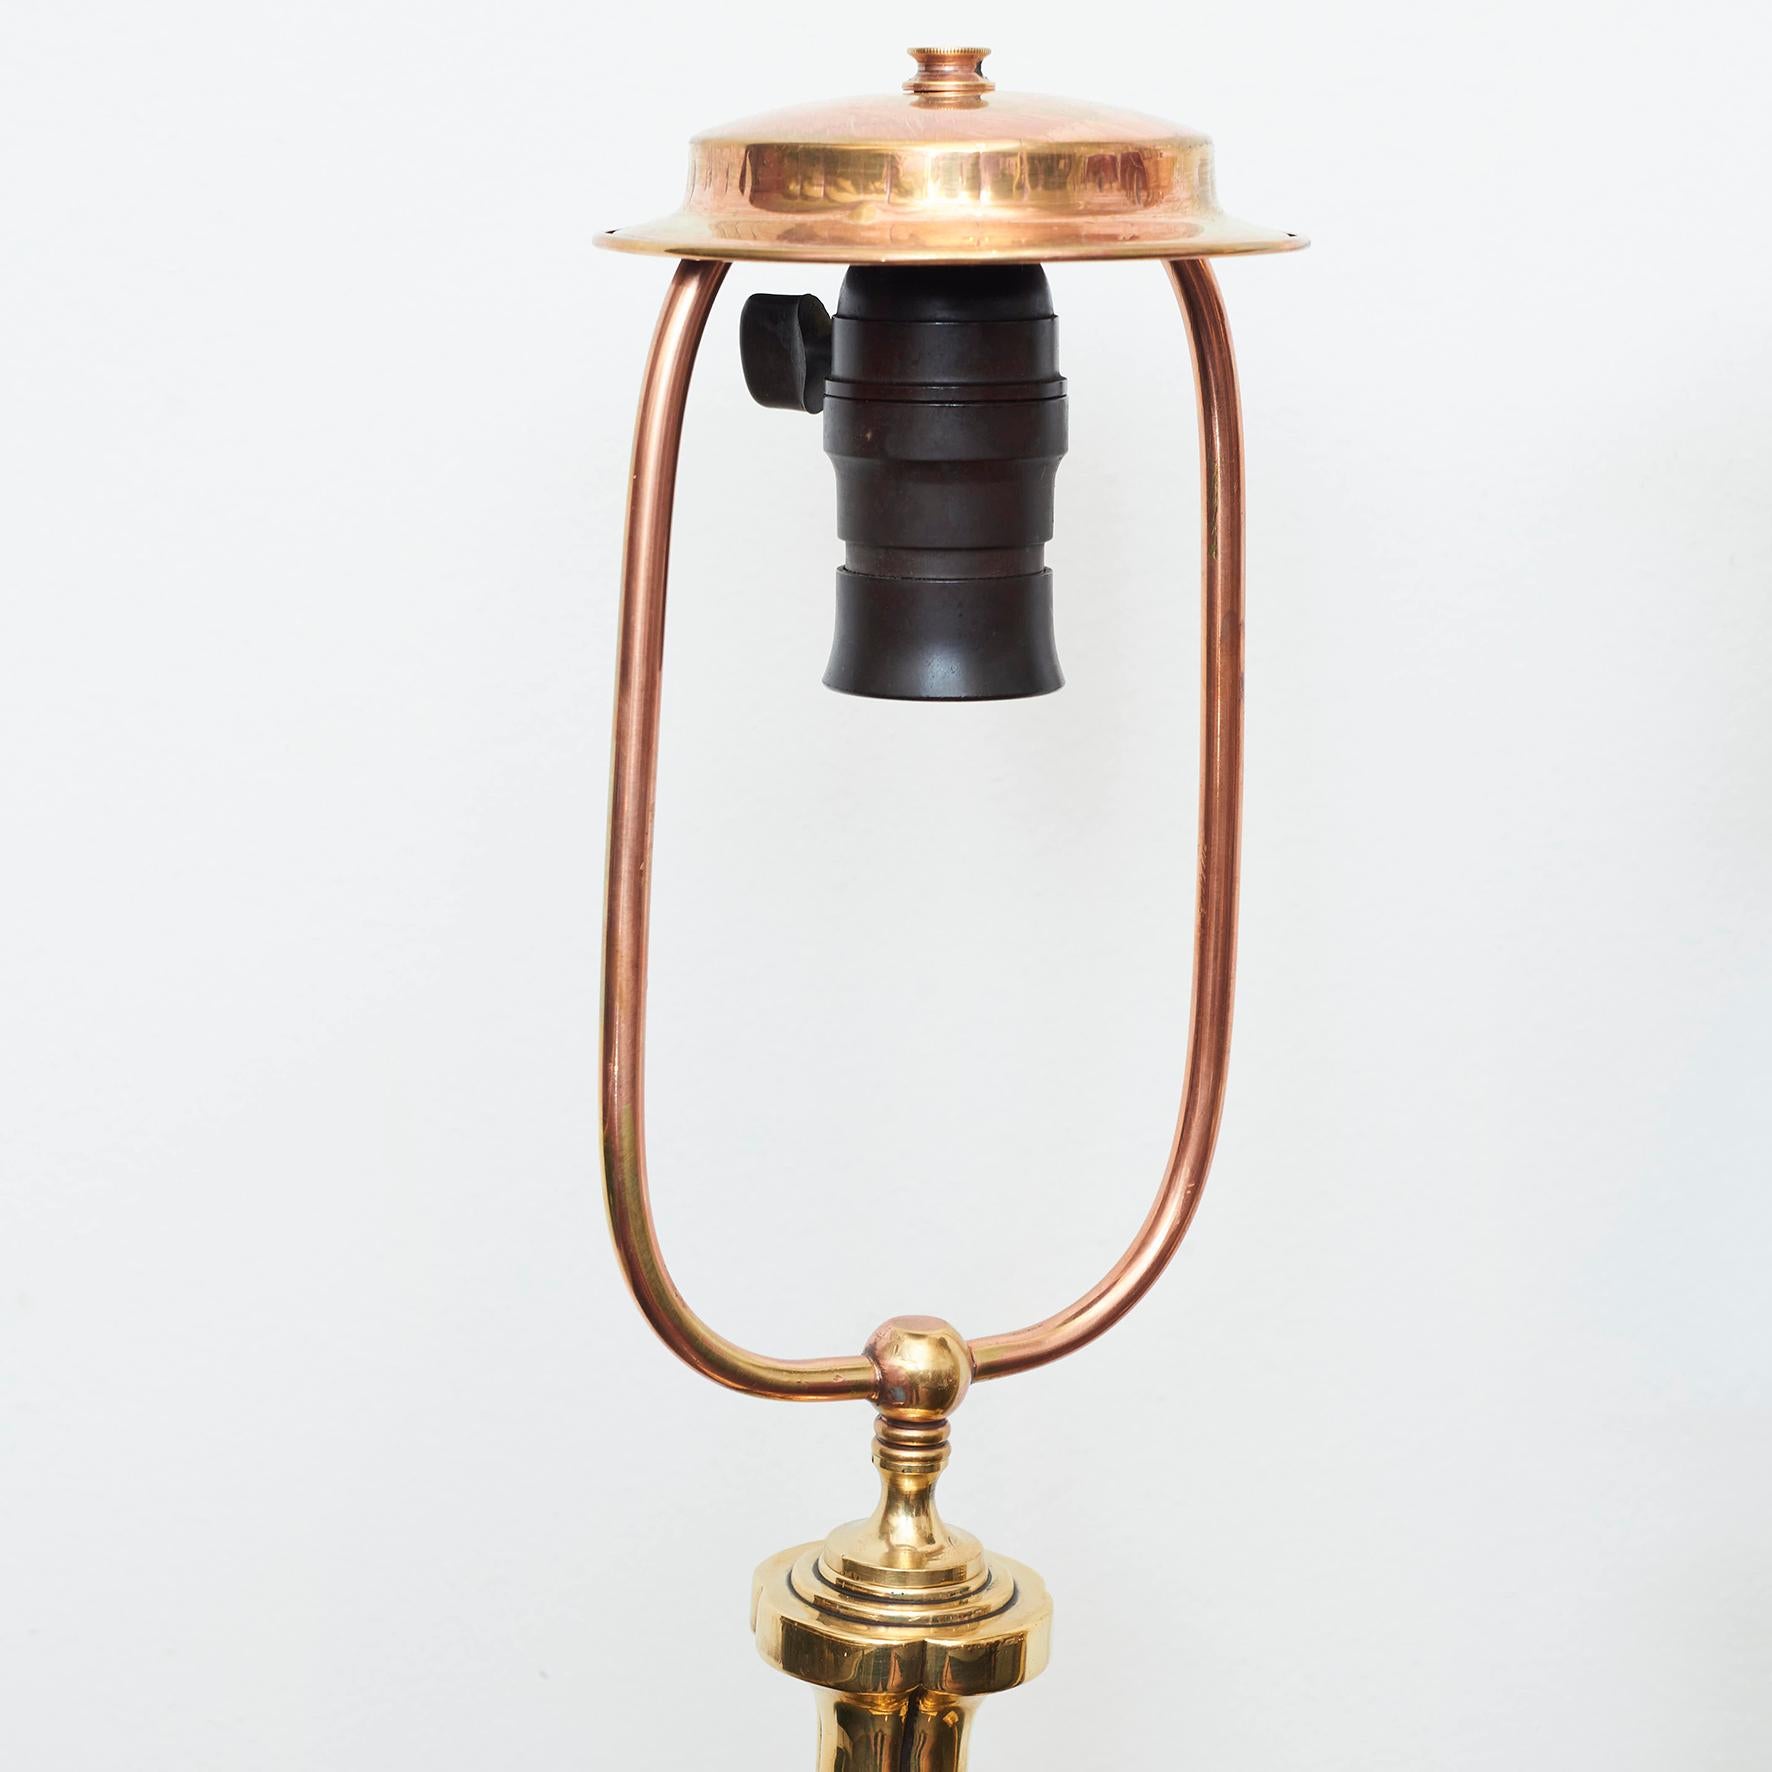 Pair of Danish Art Nouveau Brass Table Lamps (Dänisch)